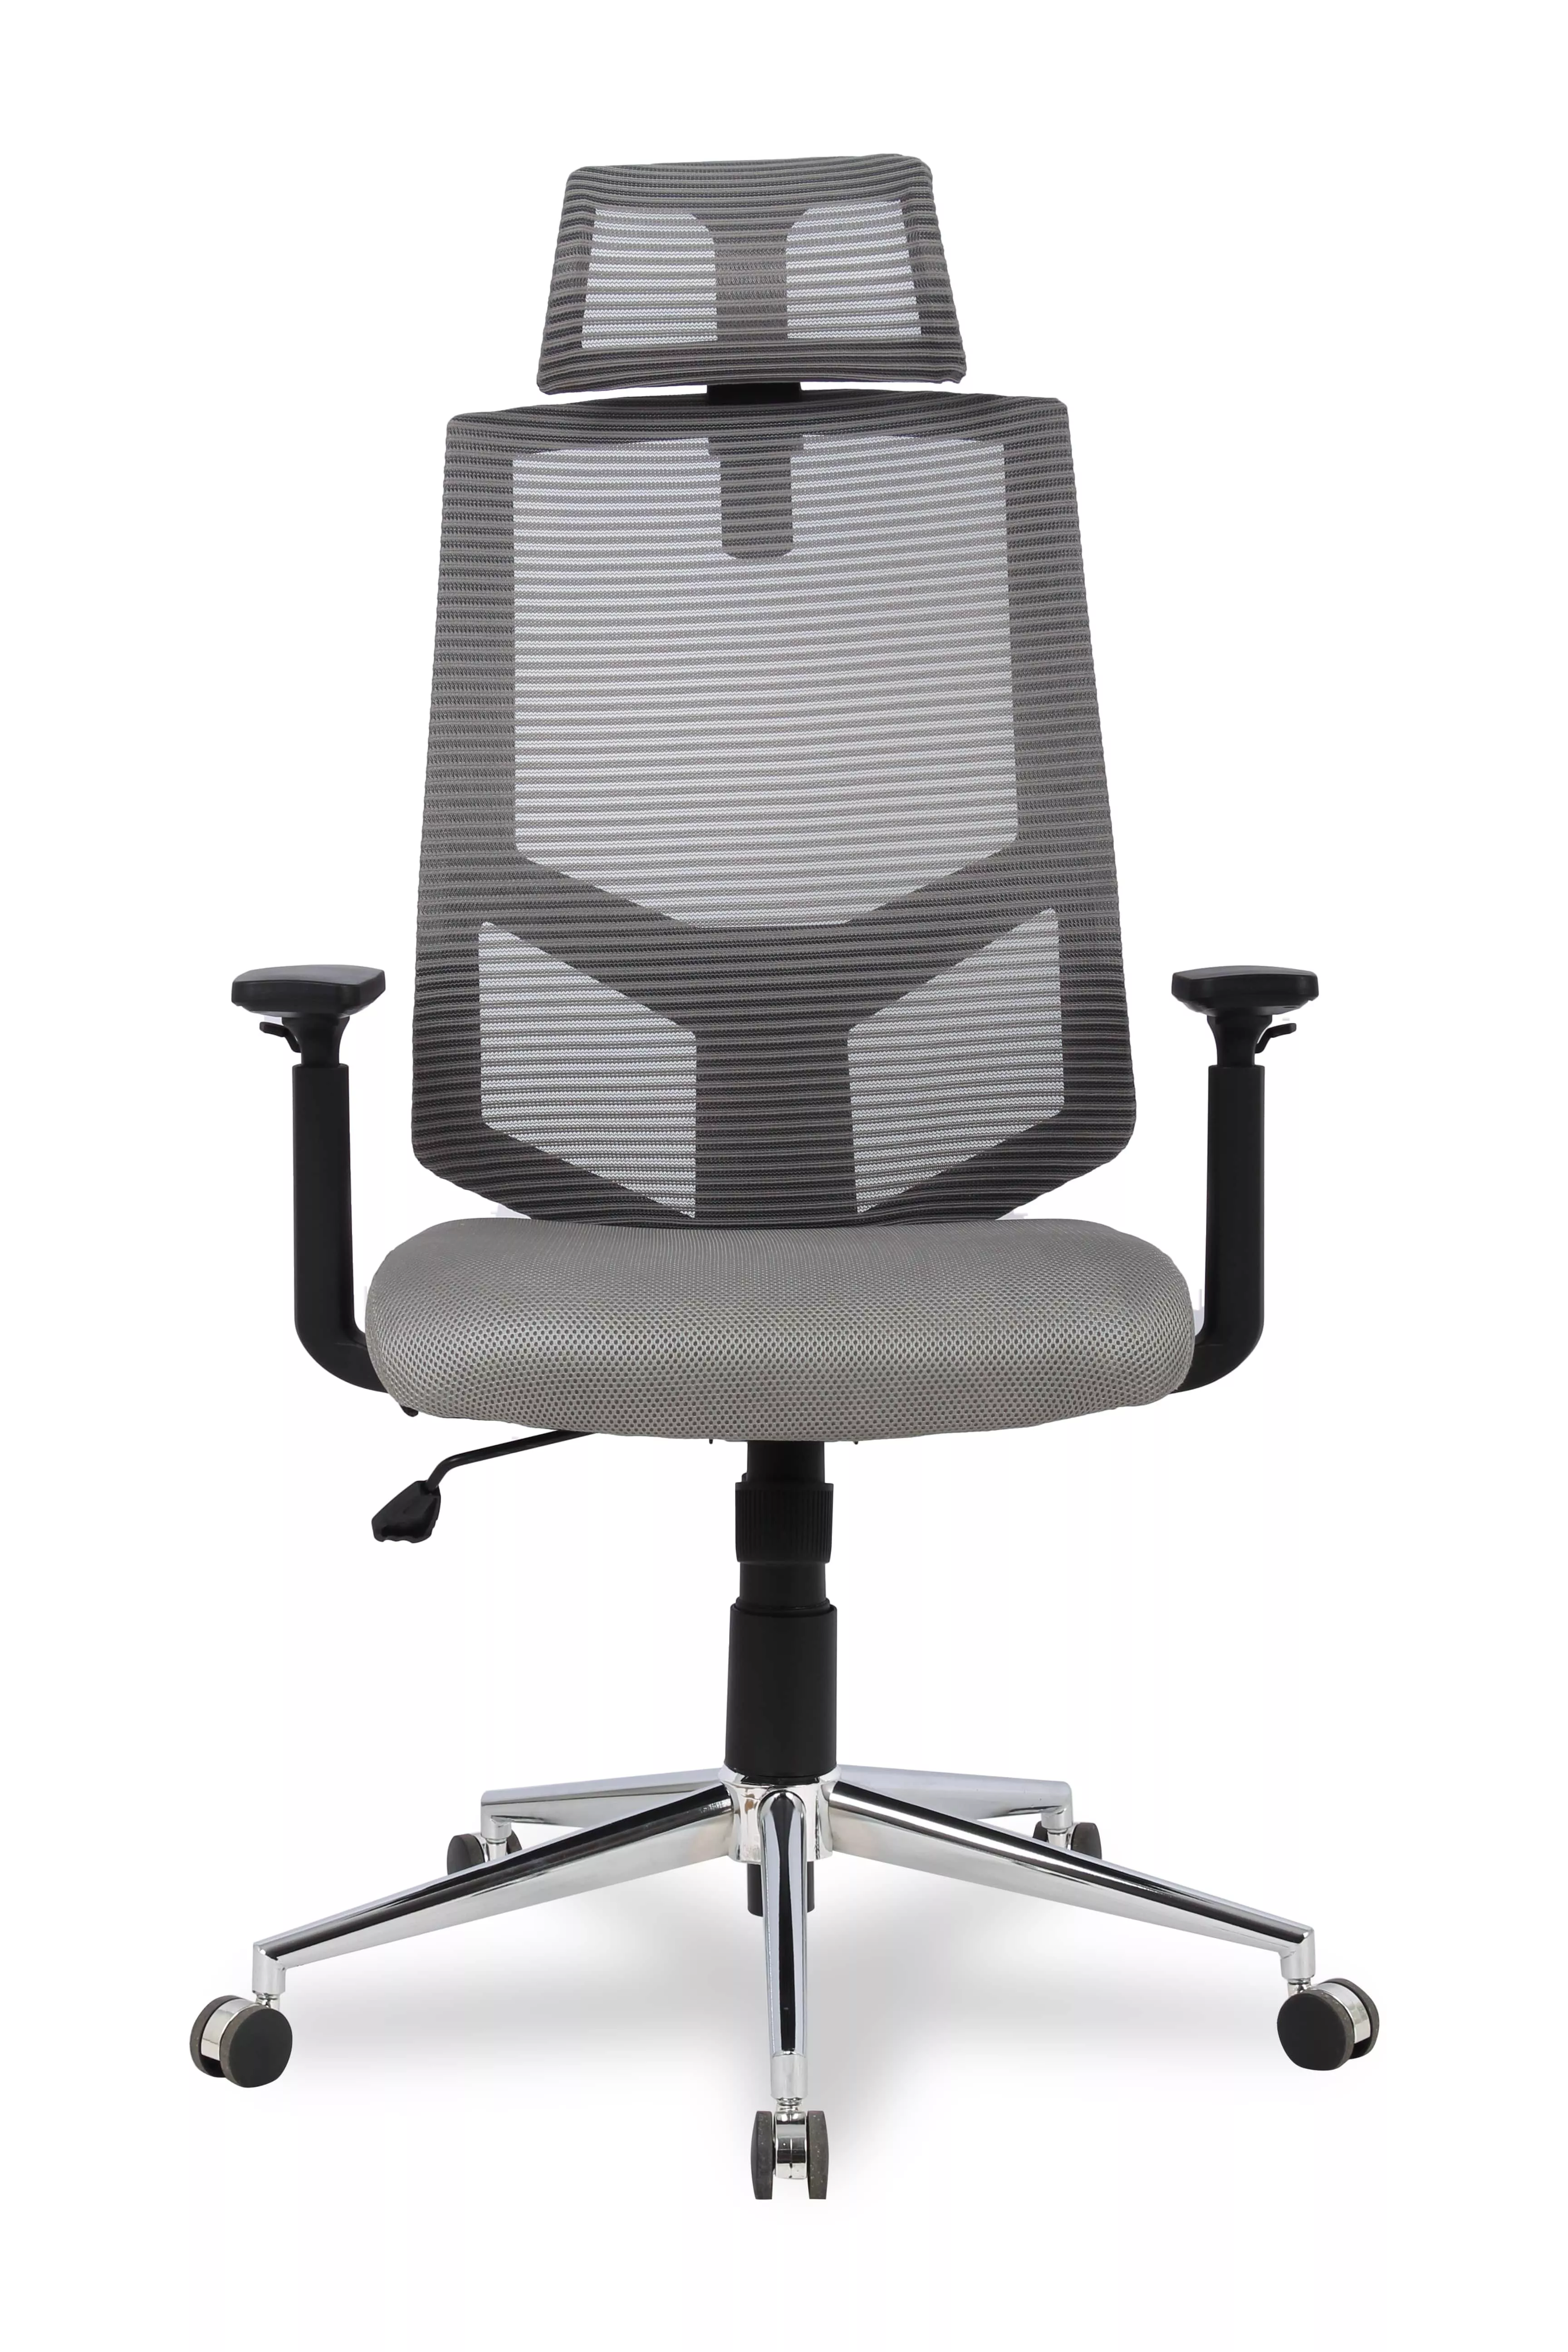 Компьютерное кресло College HLC-1500H Серый